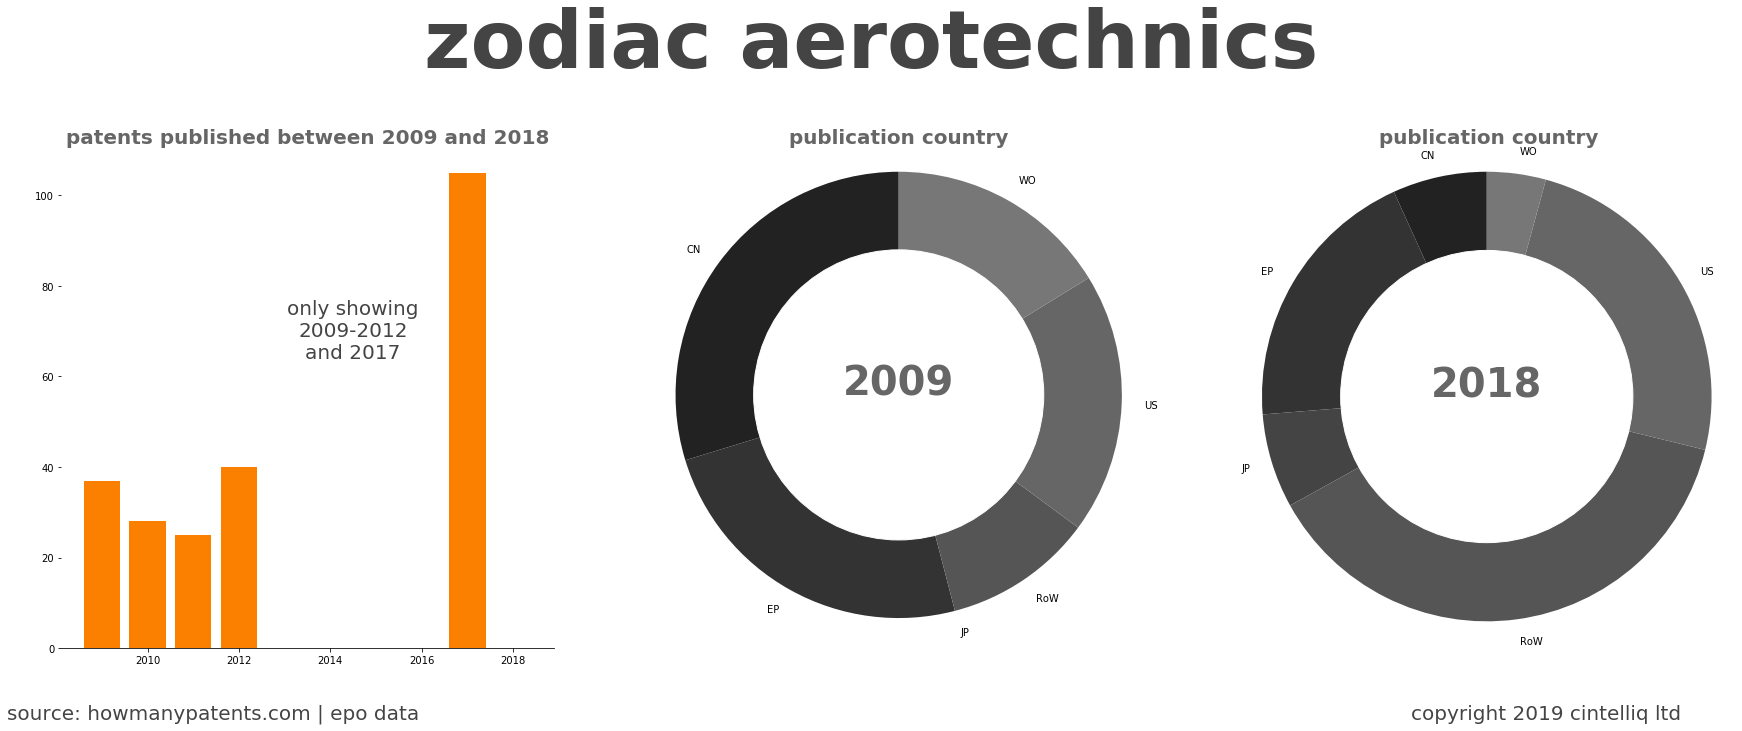 summary of patents for Zodiac Aerotechnics